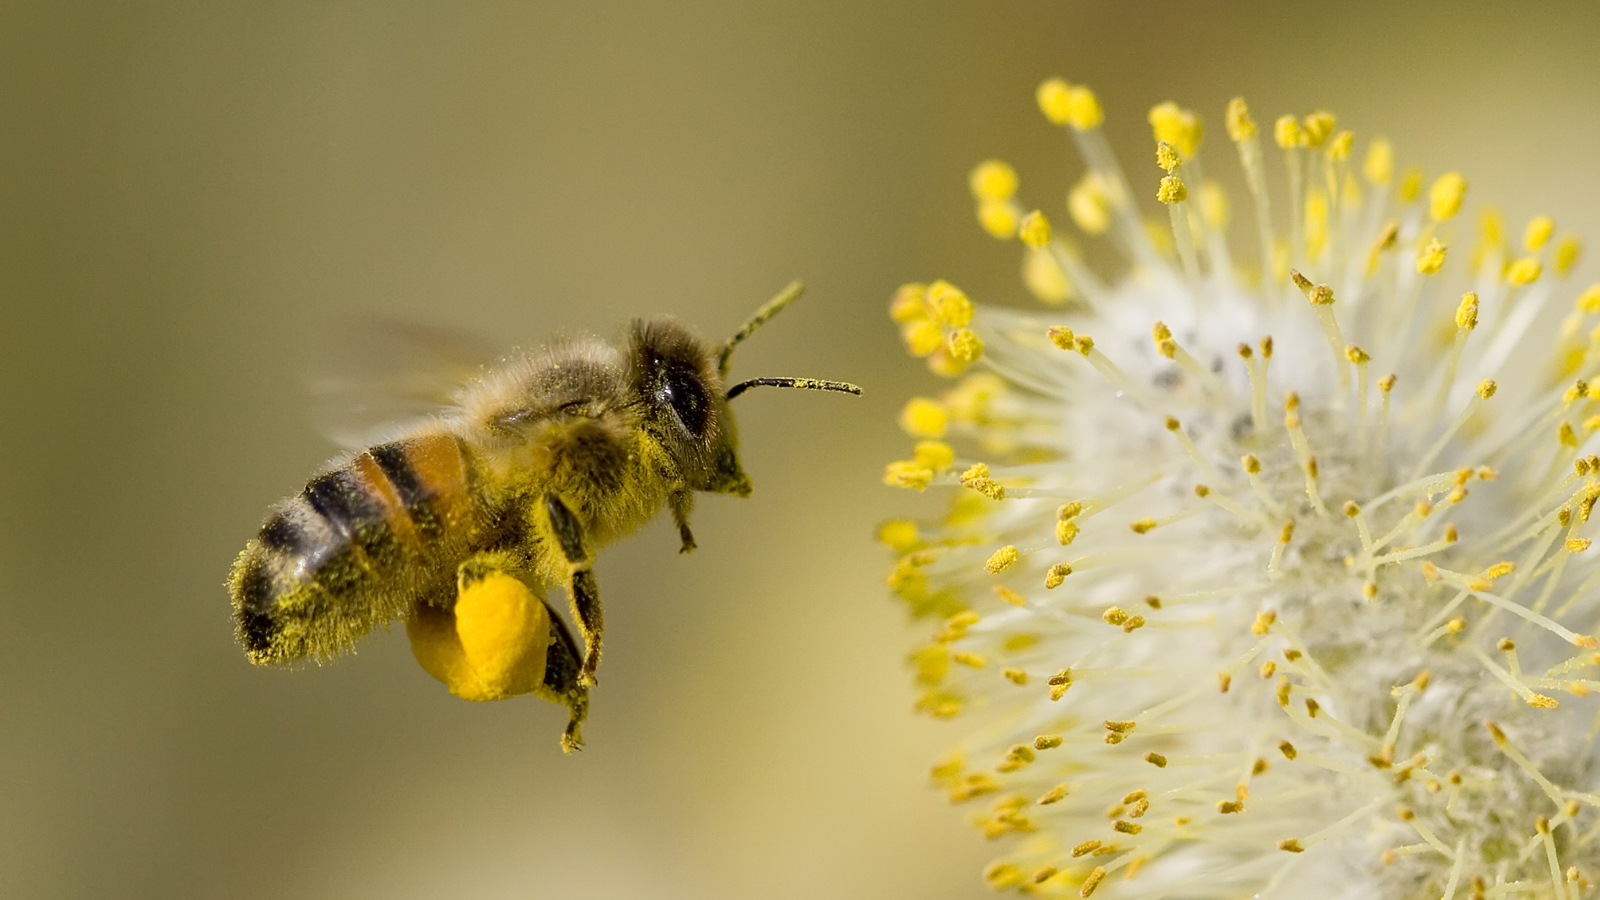 Bestuiving door bijen